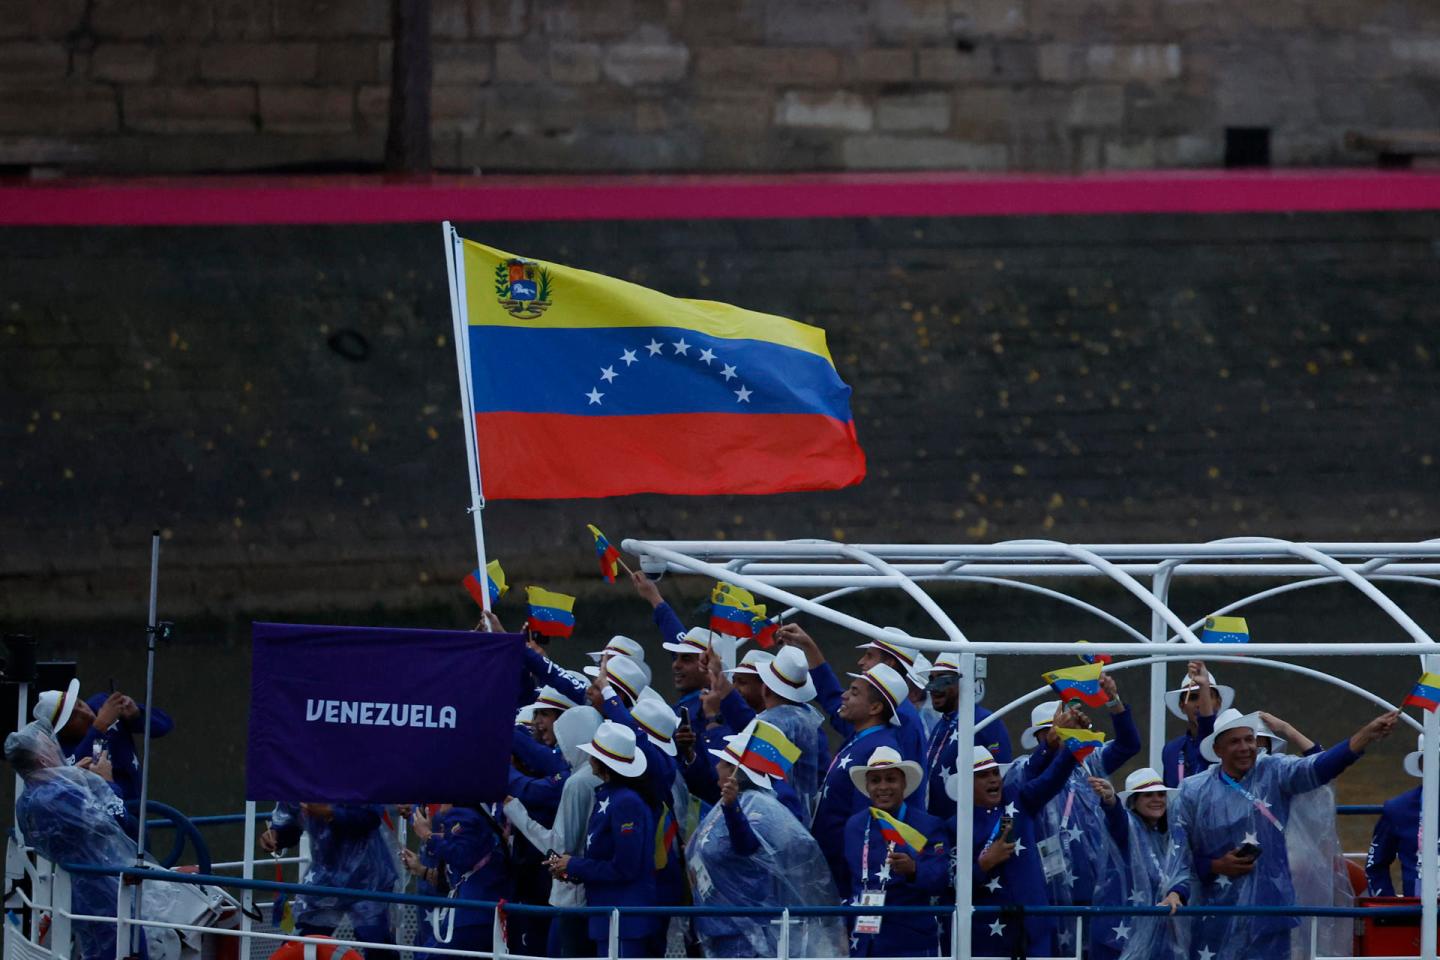 Con el tricolor en alto, Venezuela brilló en el Sena durante la inauguración de los JJOO de París 2024 (VIDEO)